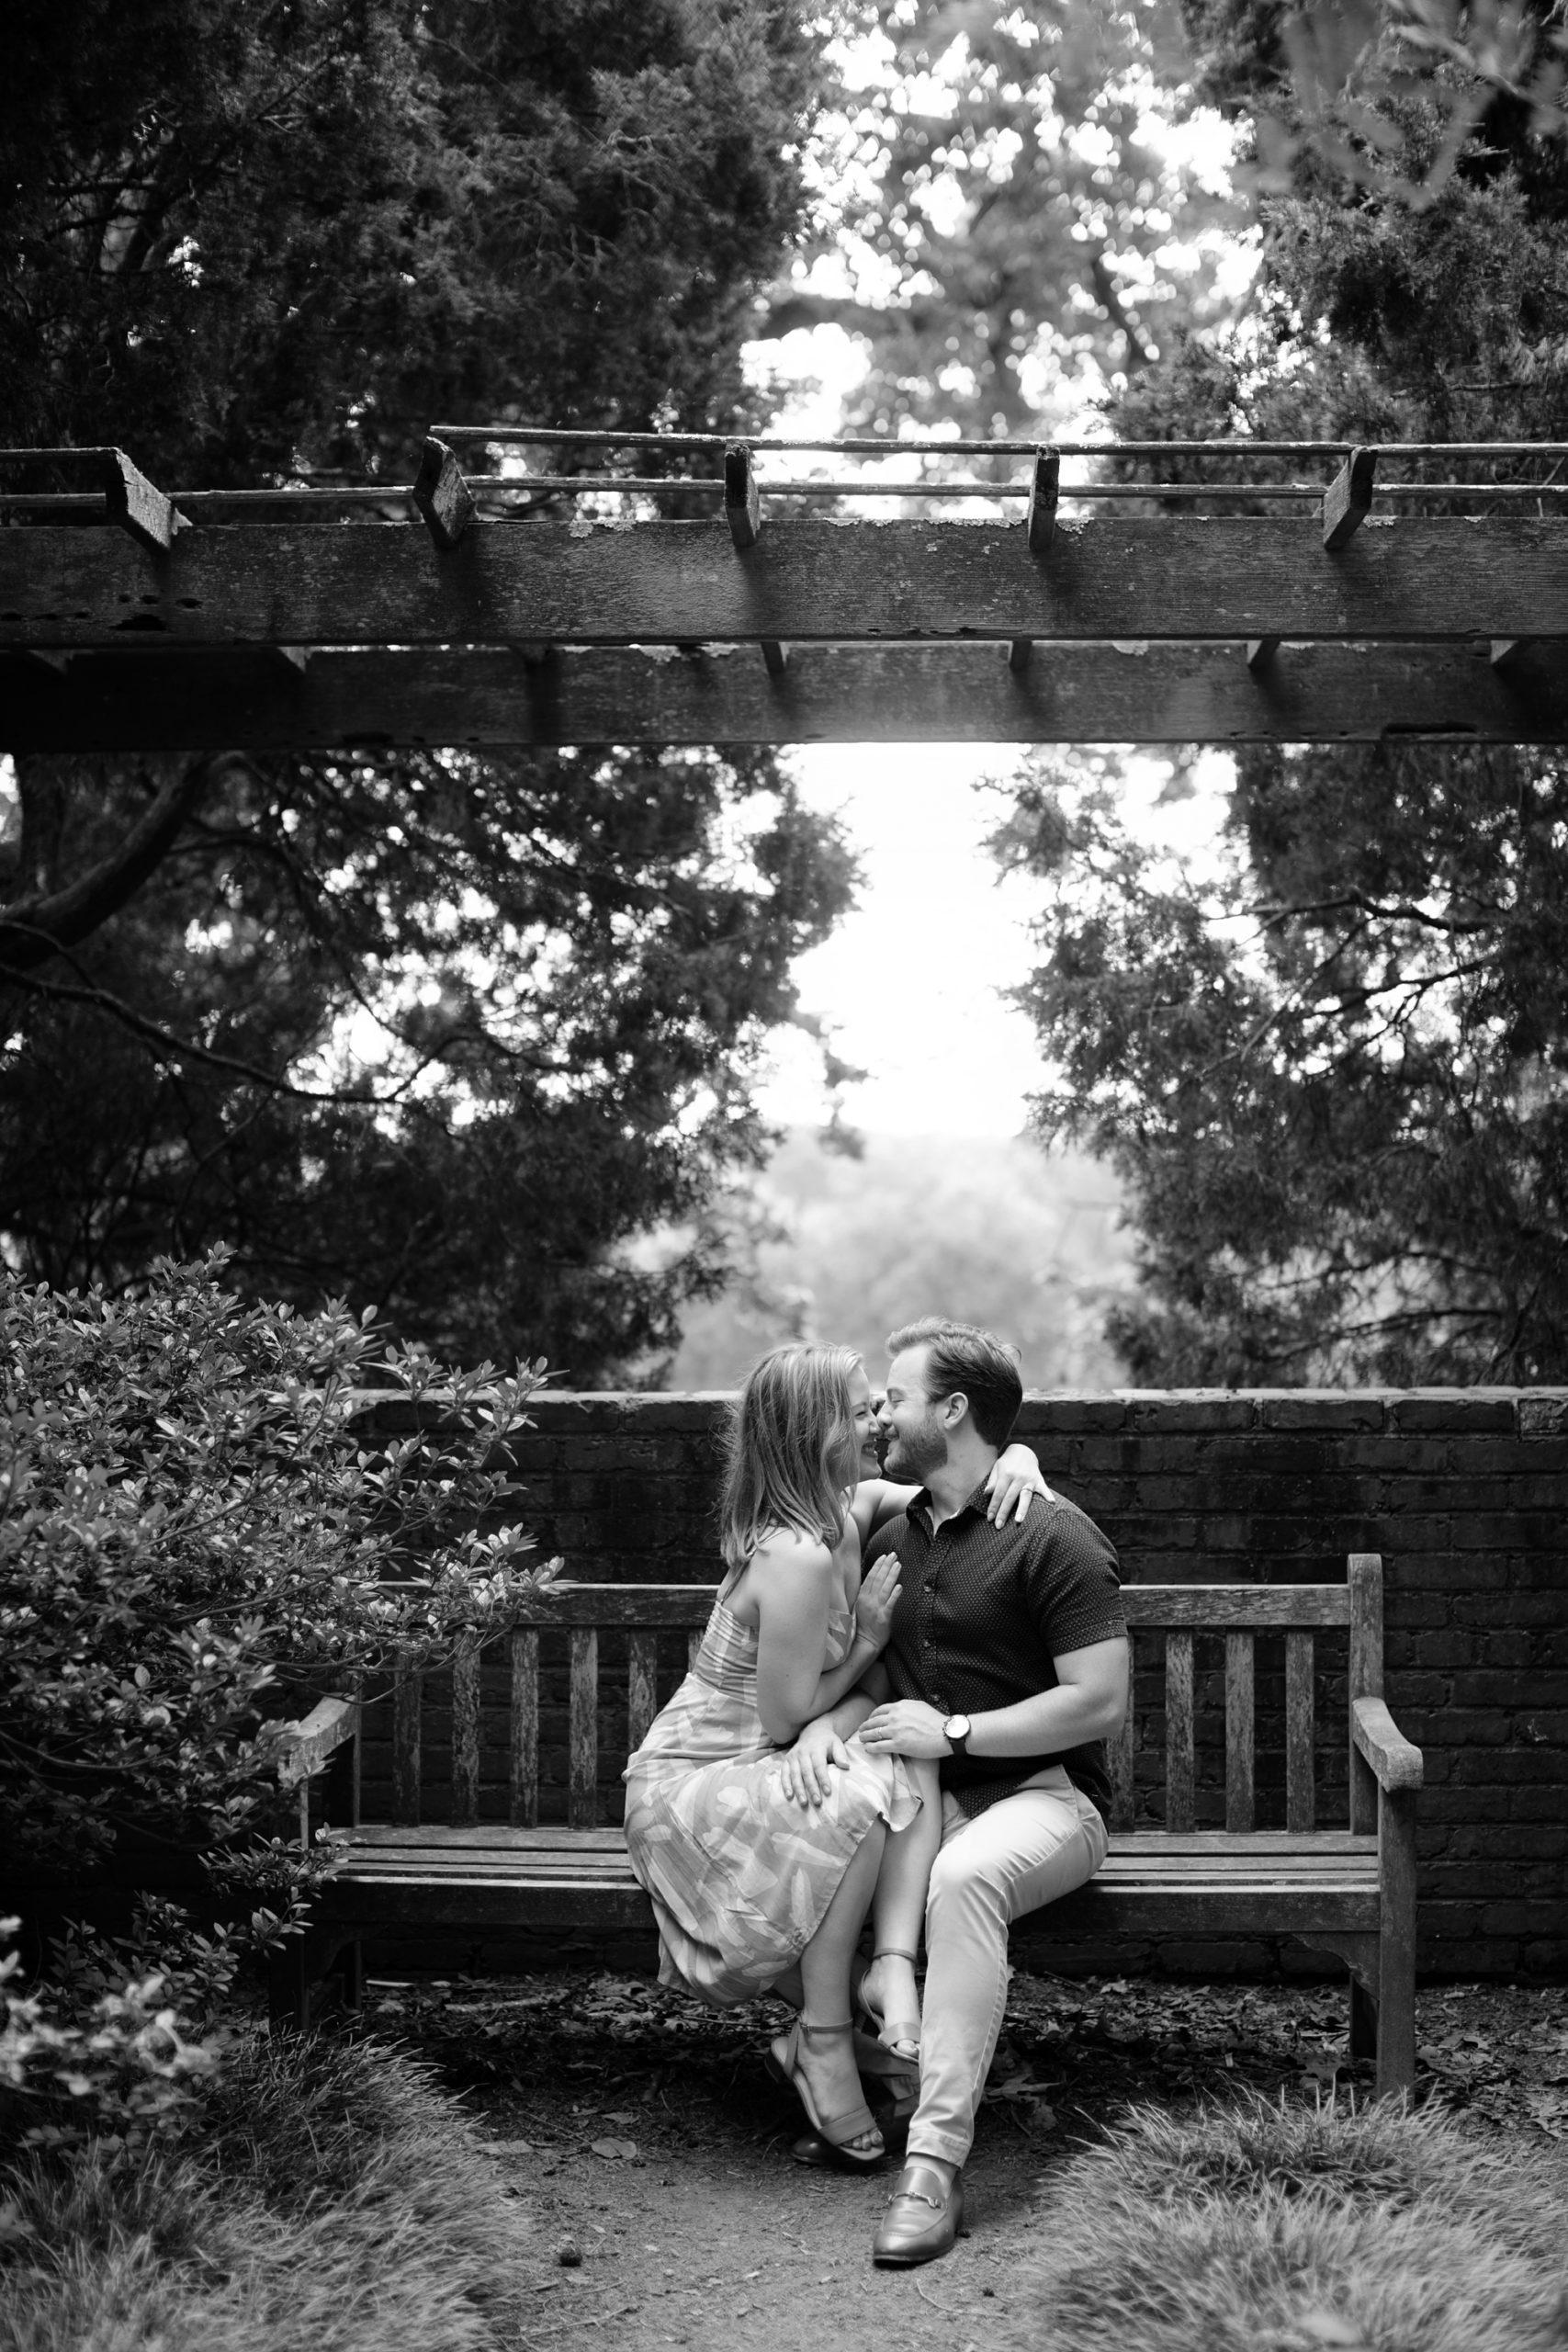 National Arboretum Engagement Photos, Washington D.C Wedding and Engagement Photographer